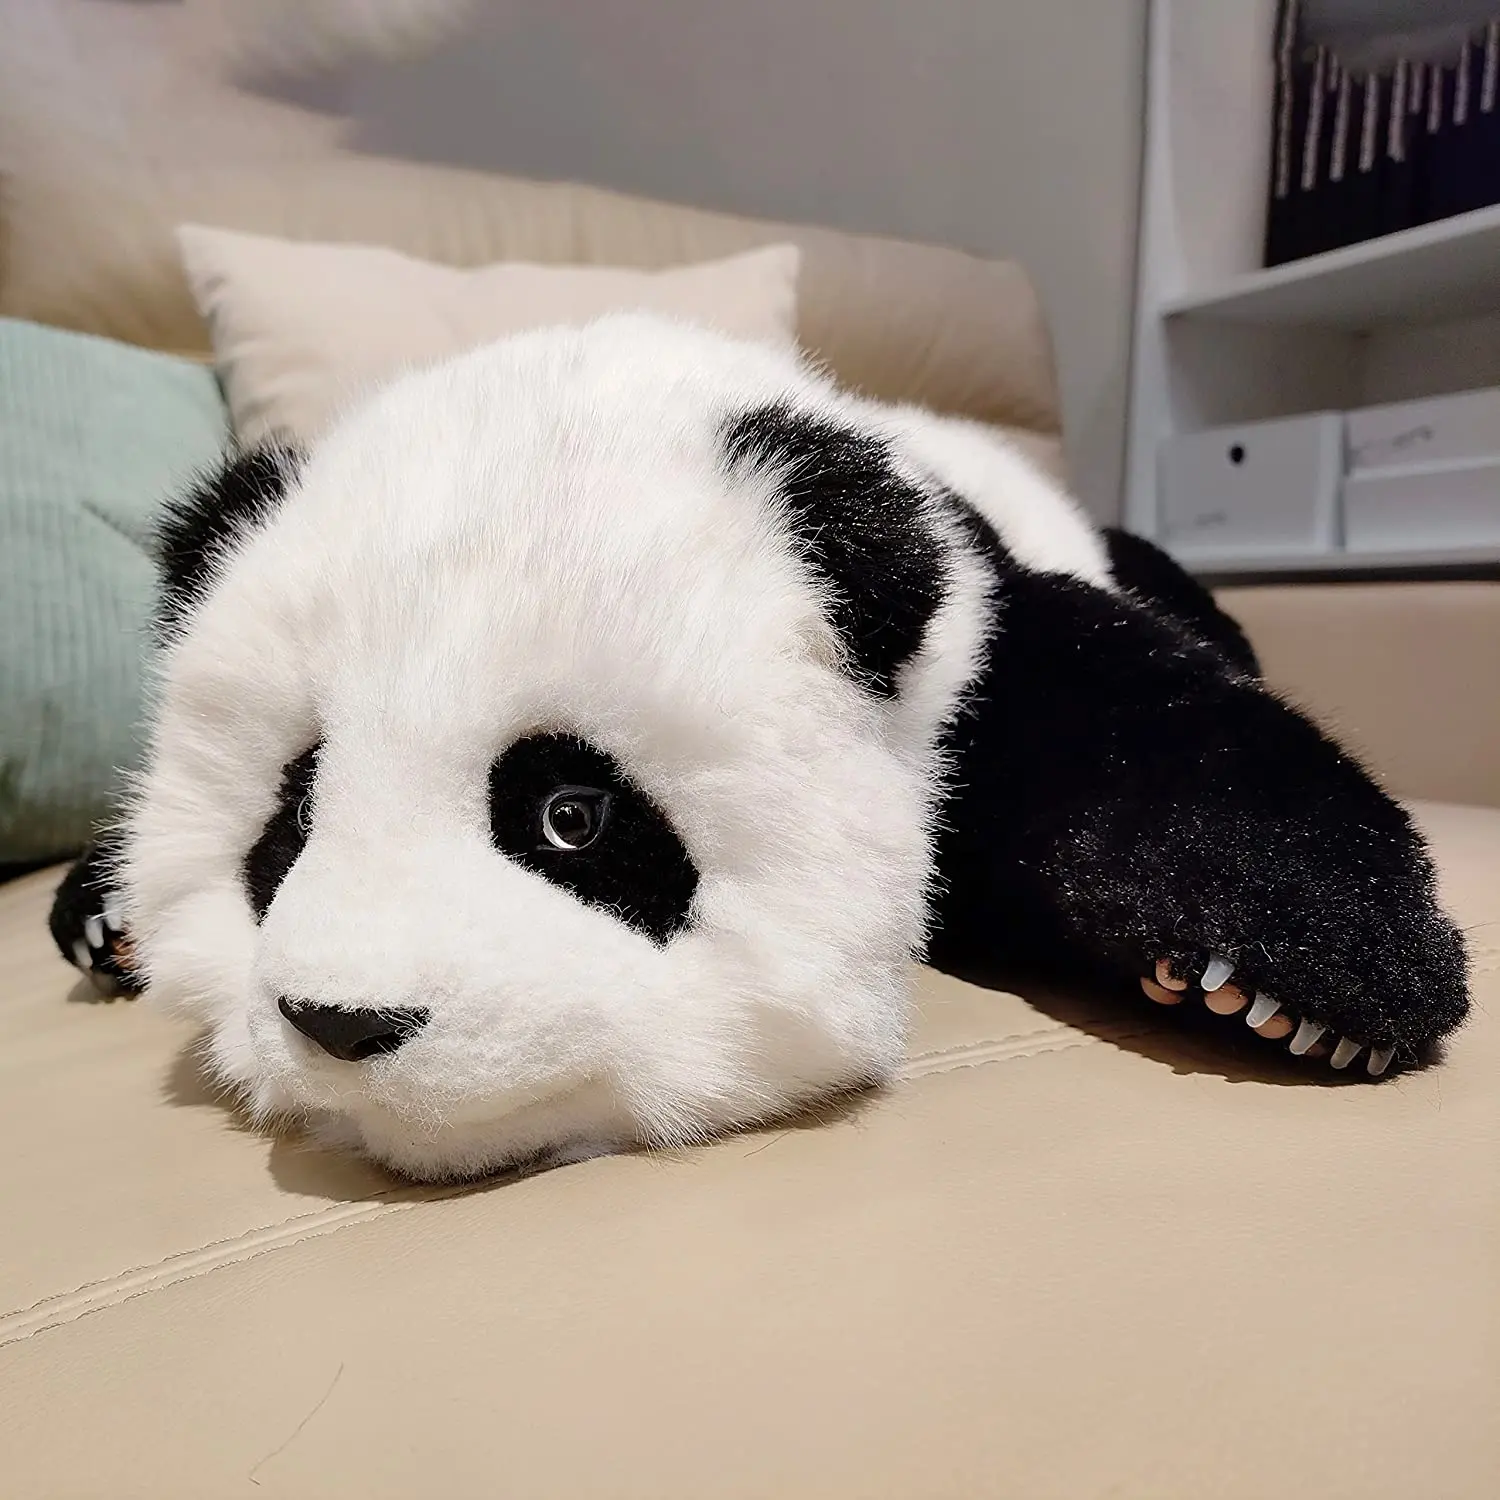 Animales de peluche de 4LB, Panda gigante de peluche realista hecho a mano para la ansiedad, juguete de felpa pesado